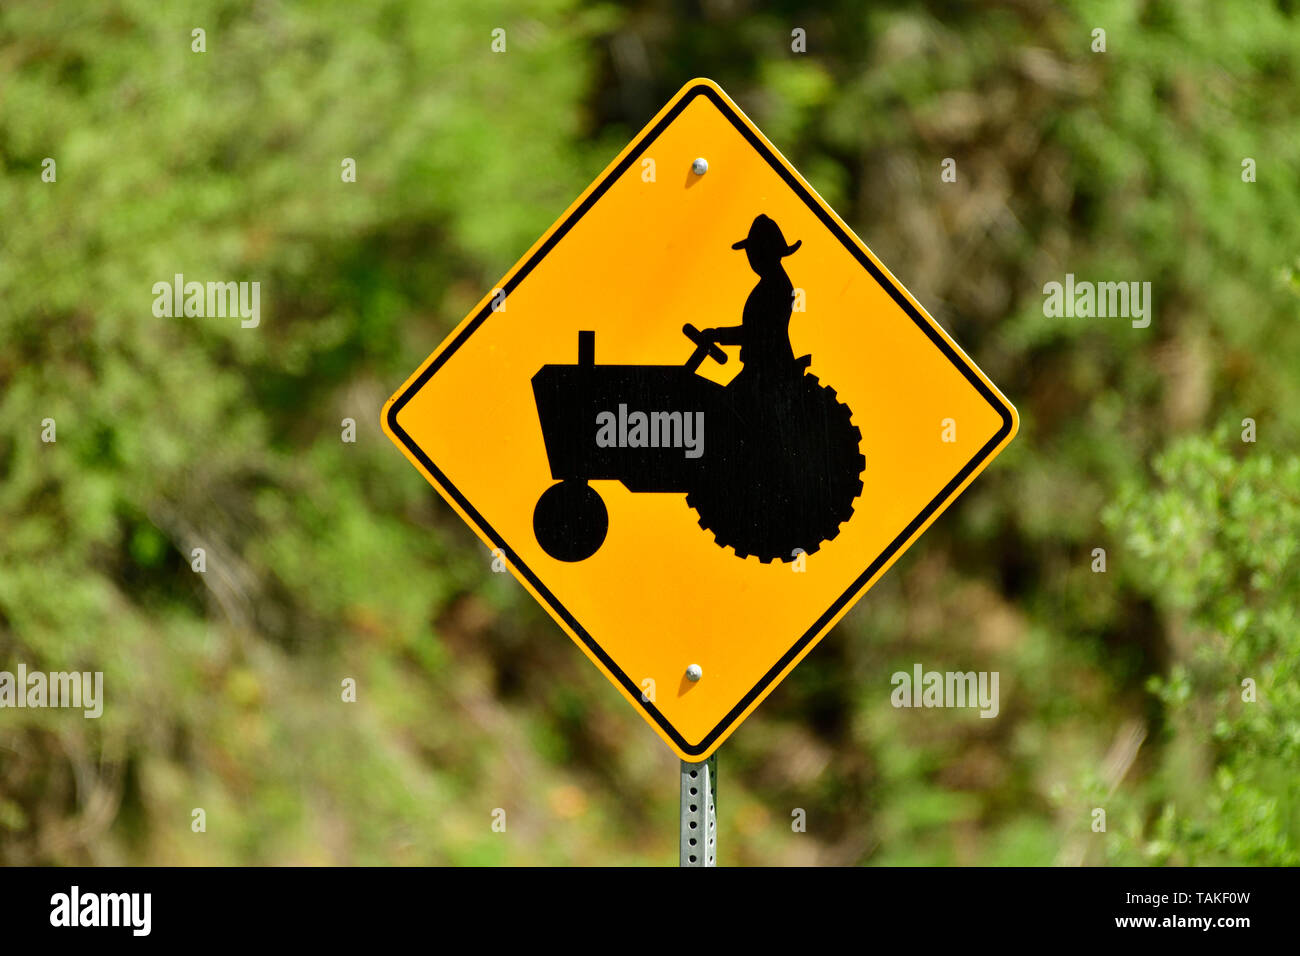 Une image horizontale d'une signalisation routière les automobilistes d'avertissement qu'il y a peut-être des machines agricoles lent sur la route Banque D'Images